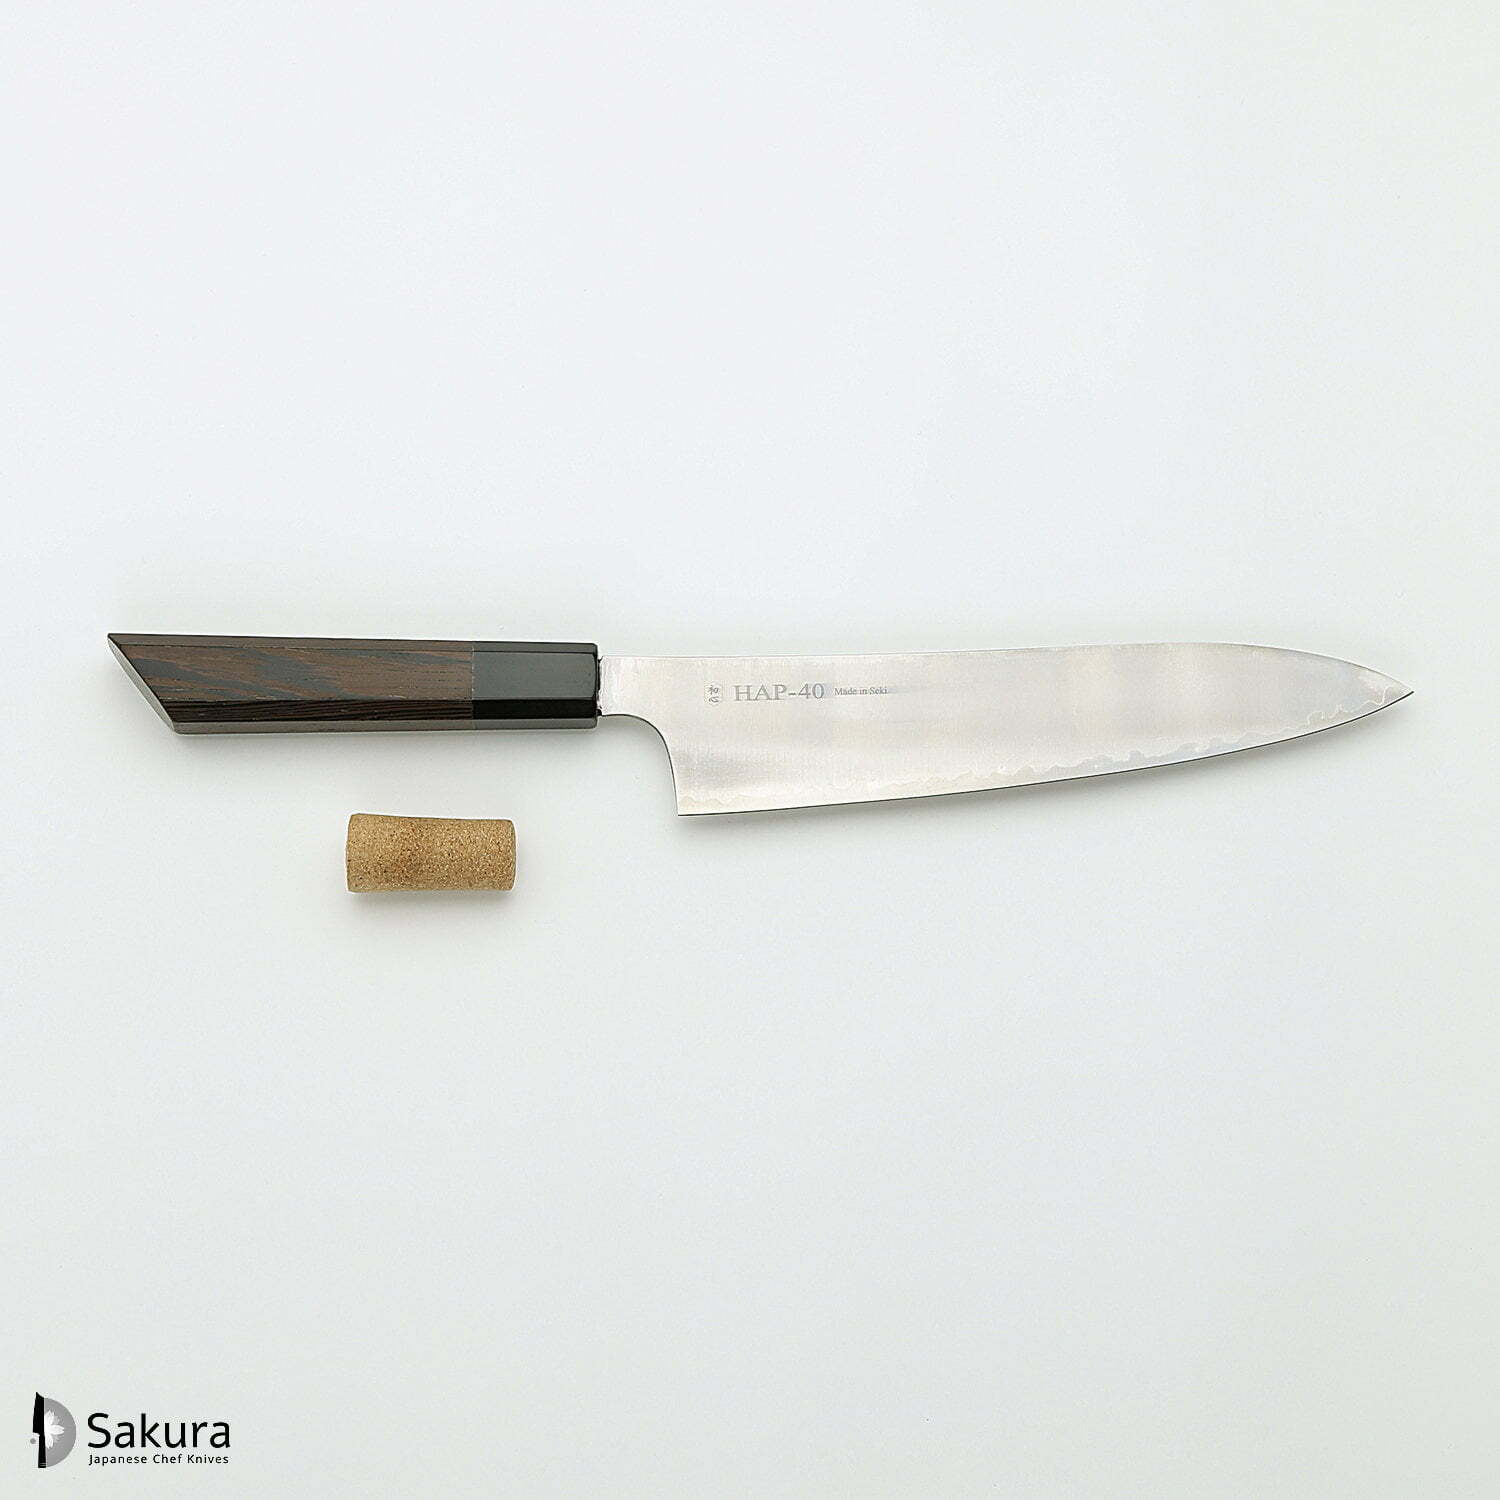 סכין שף רב-תכליתית גִּיוּטוֹ 210מ״מ מחושלת בעבודת יד 3 שכבות: פלדת פחמן יפנית מתקדמת מסוג HAP40 עטופה פלדת אל-חלד גימור מט מלוטש האטסו קוקורו יפן